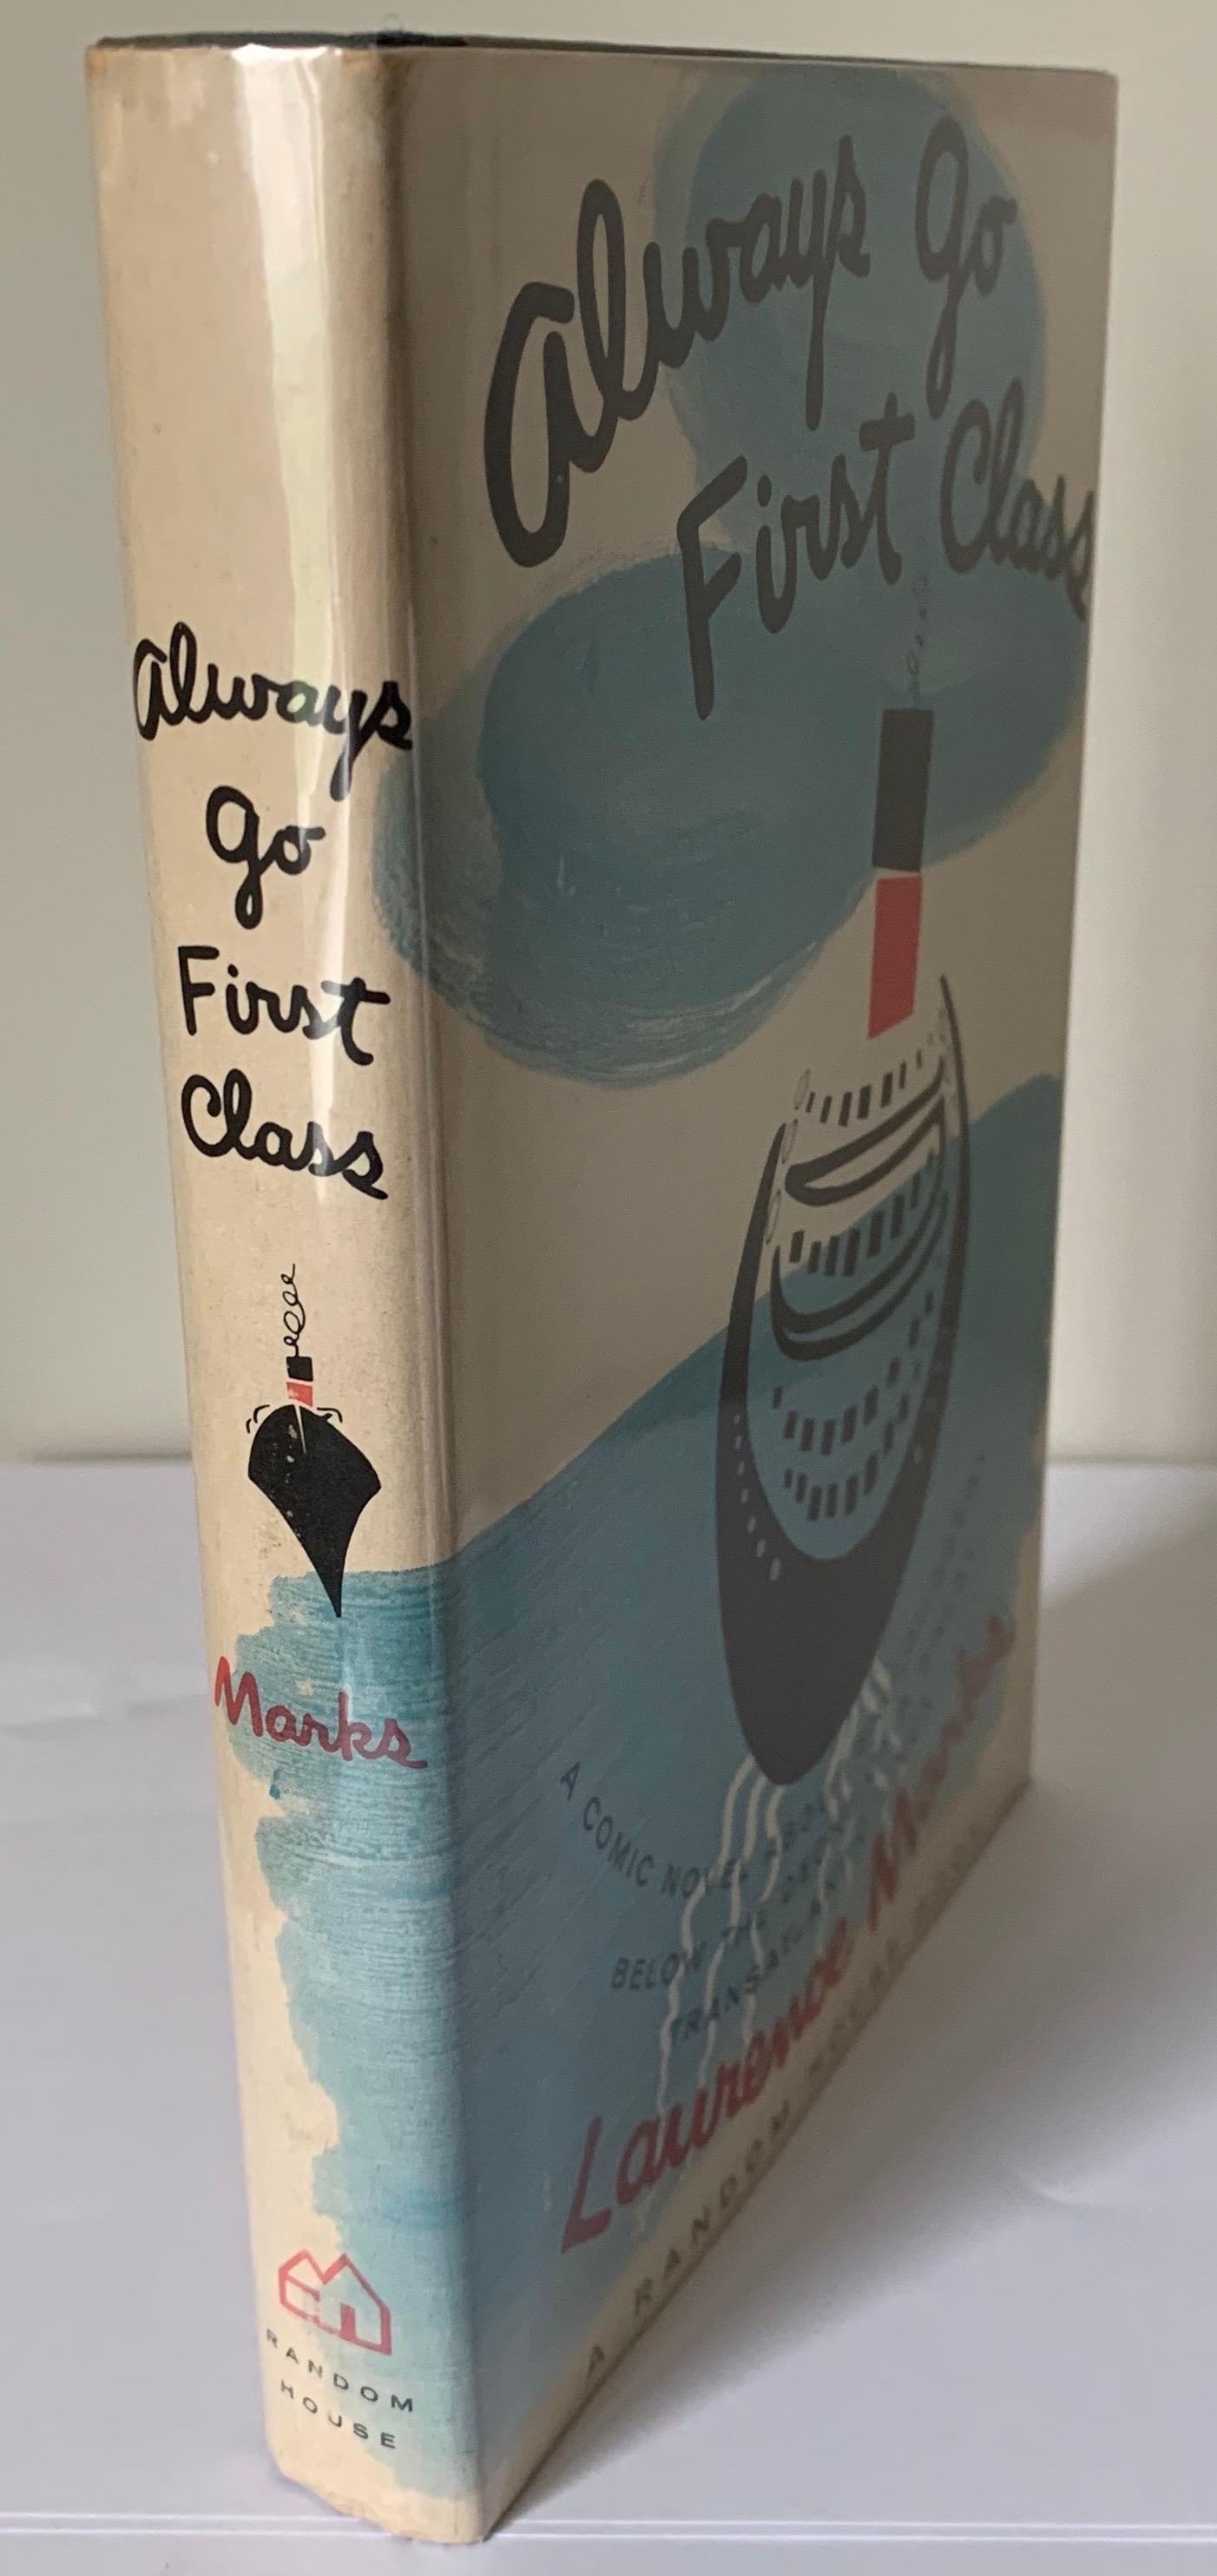 Toujours aller en première classe par Laurence Marks. Première édition, couverture rigide. Publié par Random House, New York, 1962. La jaquette est enveloppée dans du Mylar.